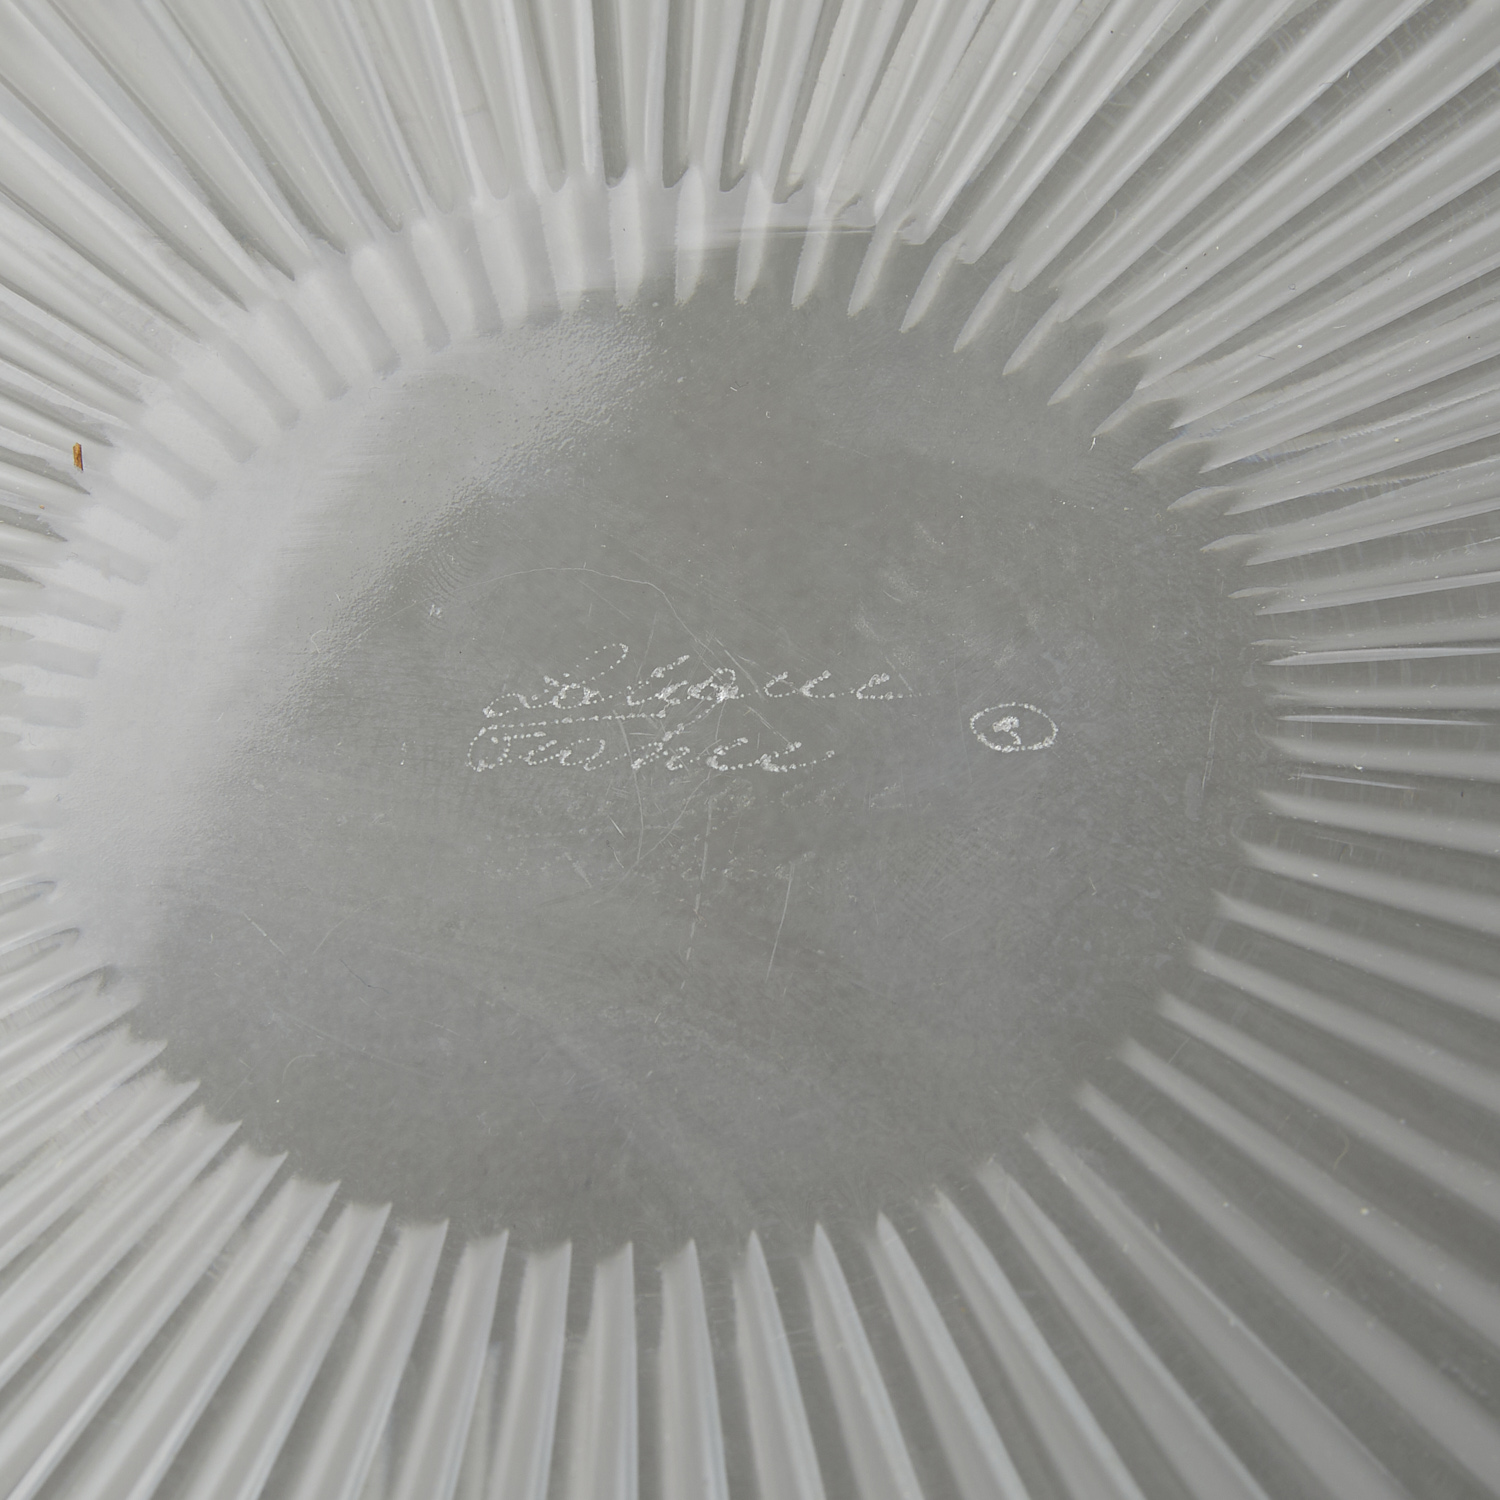 Lalique "Marguerites" Centerpiece Glass Bowl - Image 3 of 9